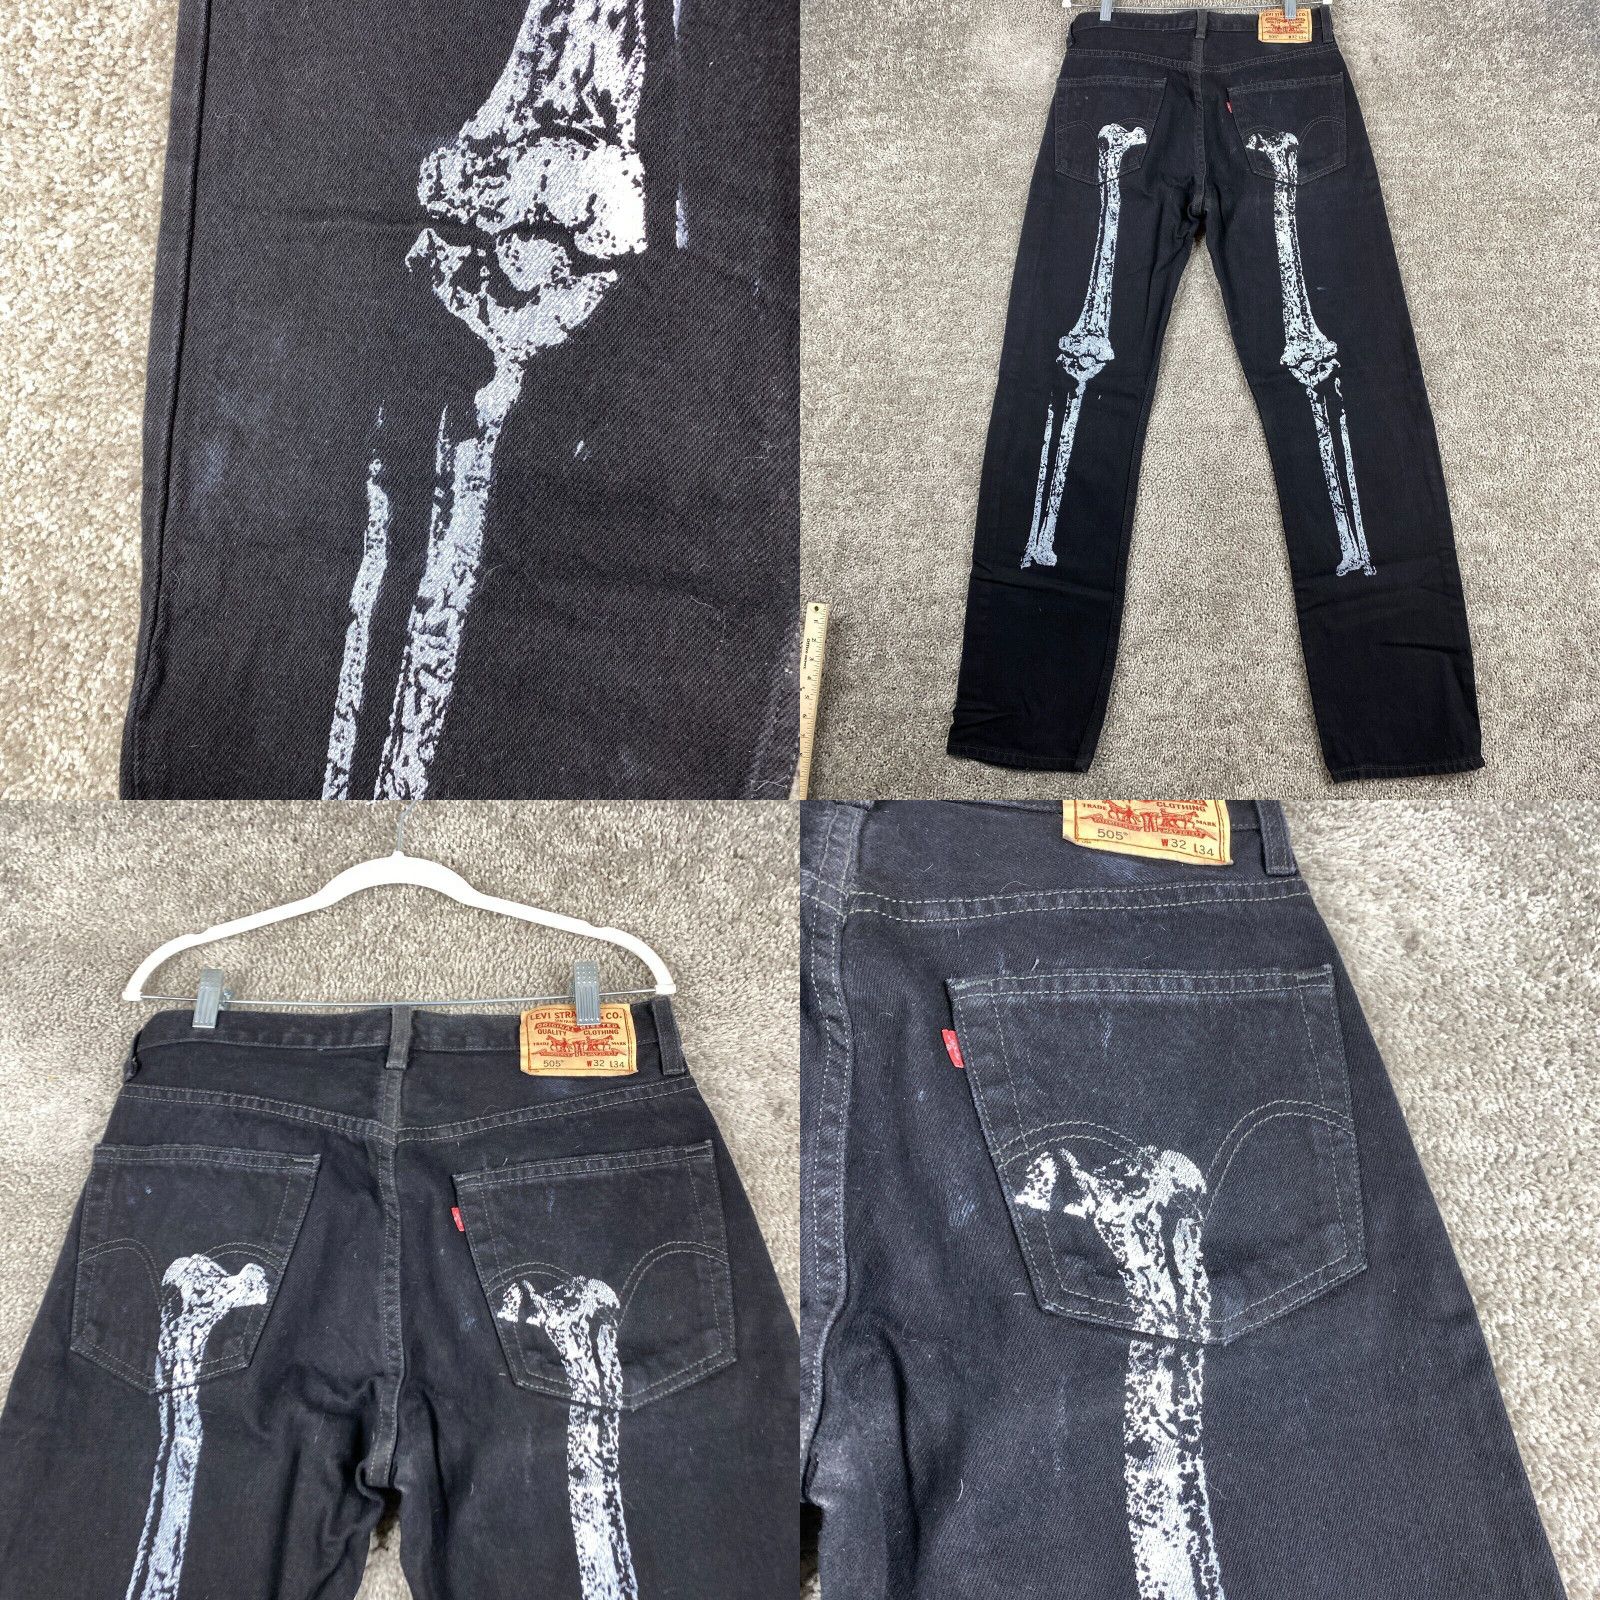 Levi's Levi's 505 Regular Fit Straight Jeans Men's Size W32xL34 Black Bone Print Size US 32 / EU 48 - 4 Preview